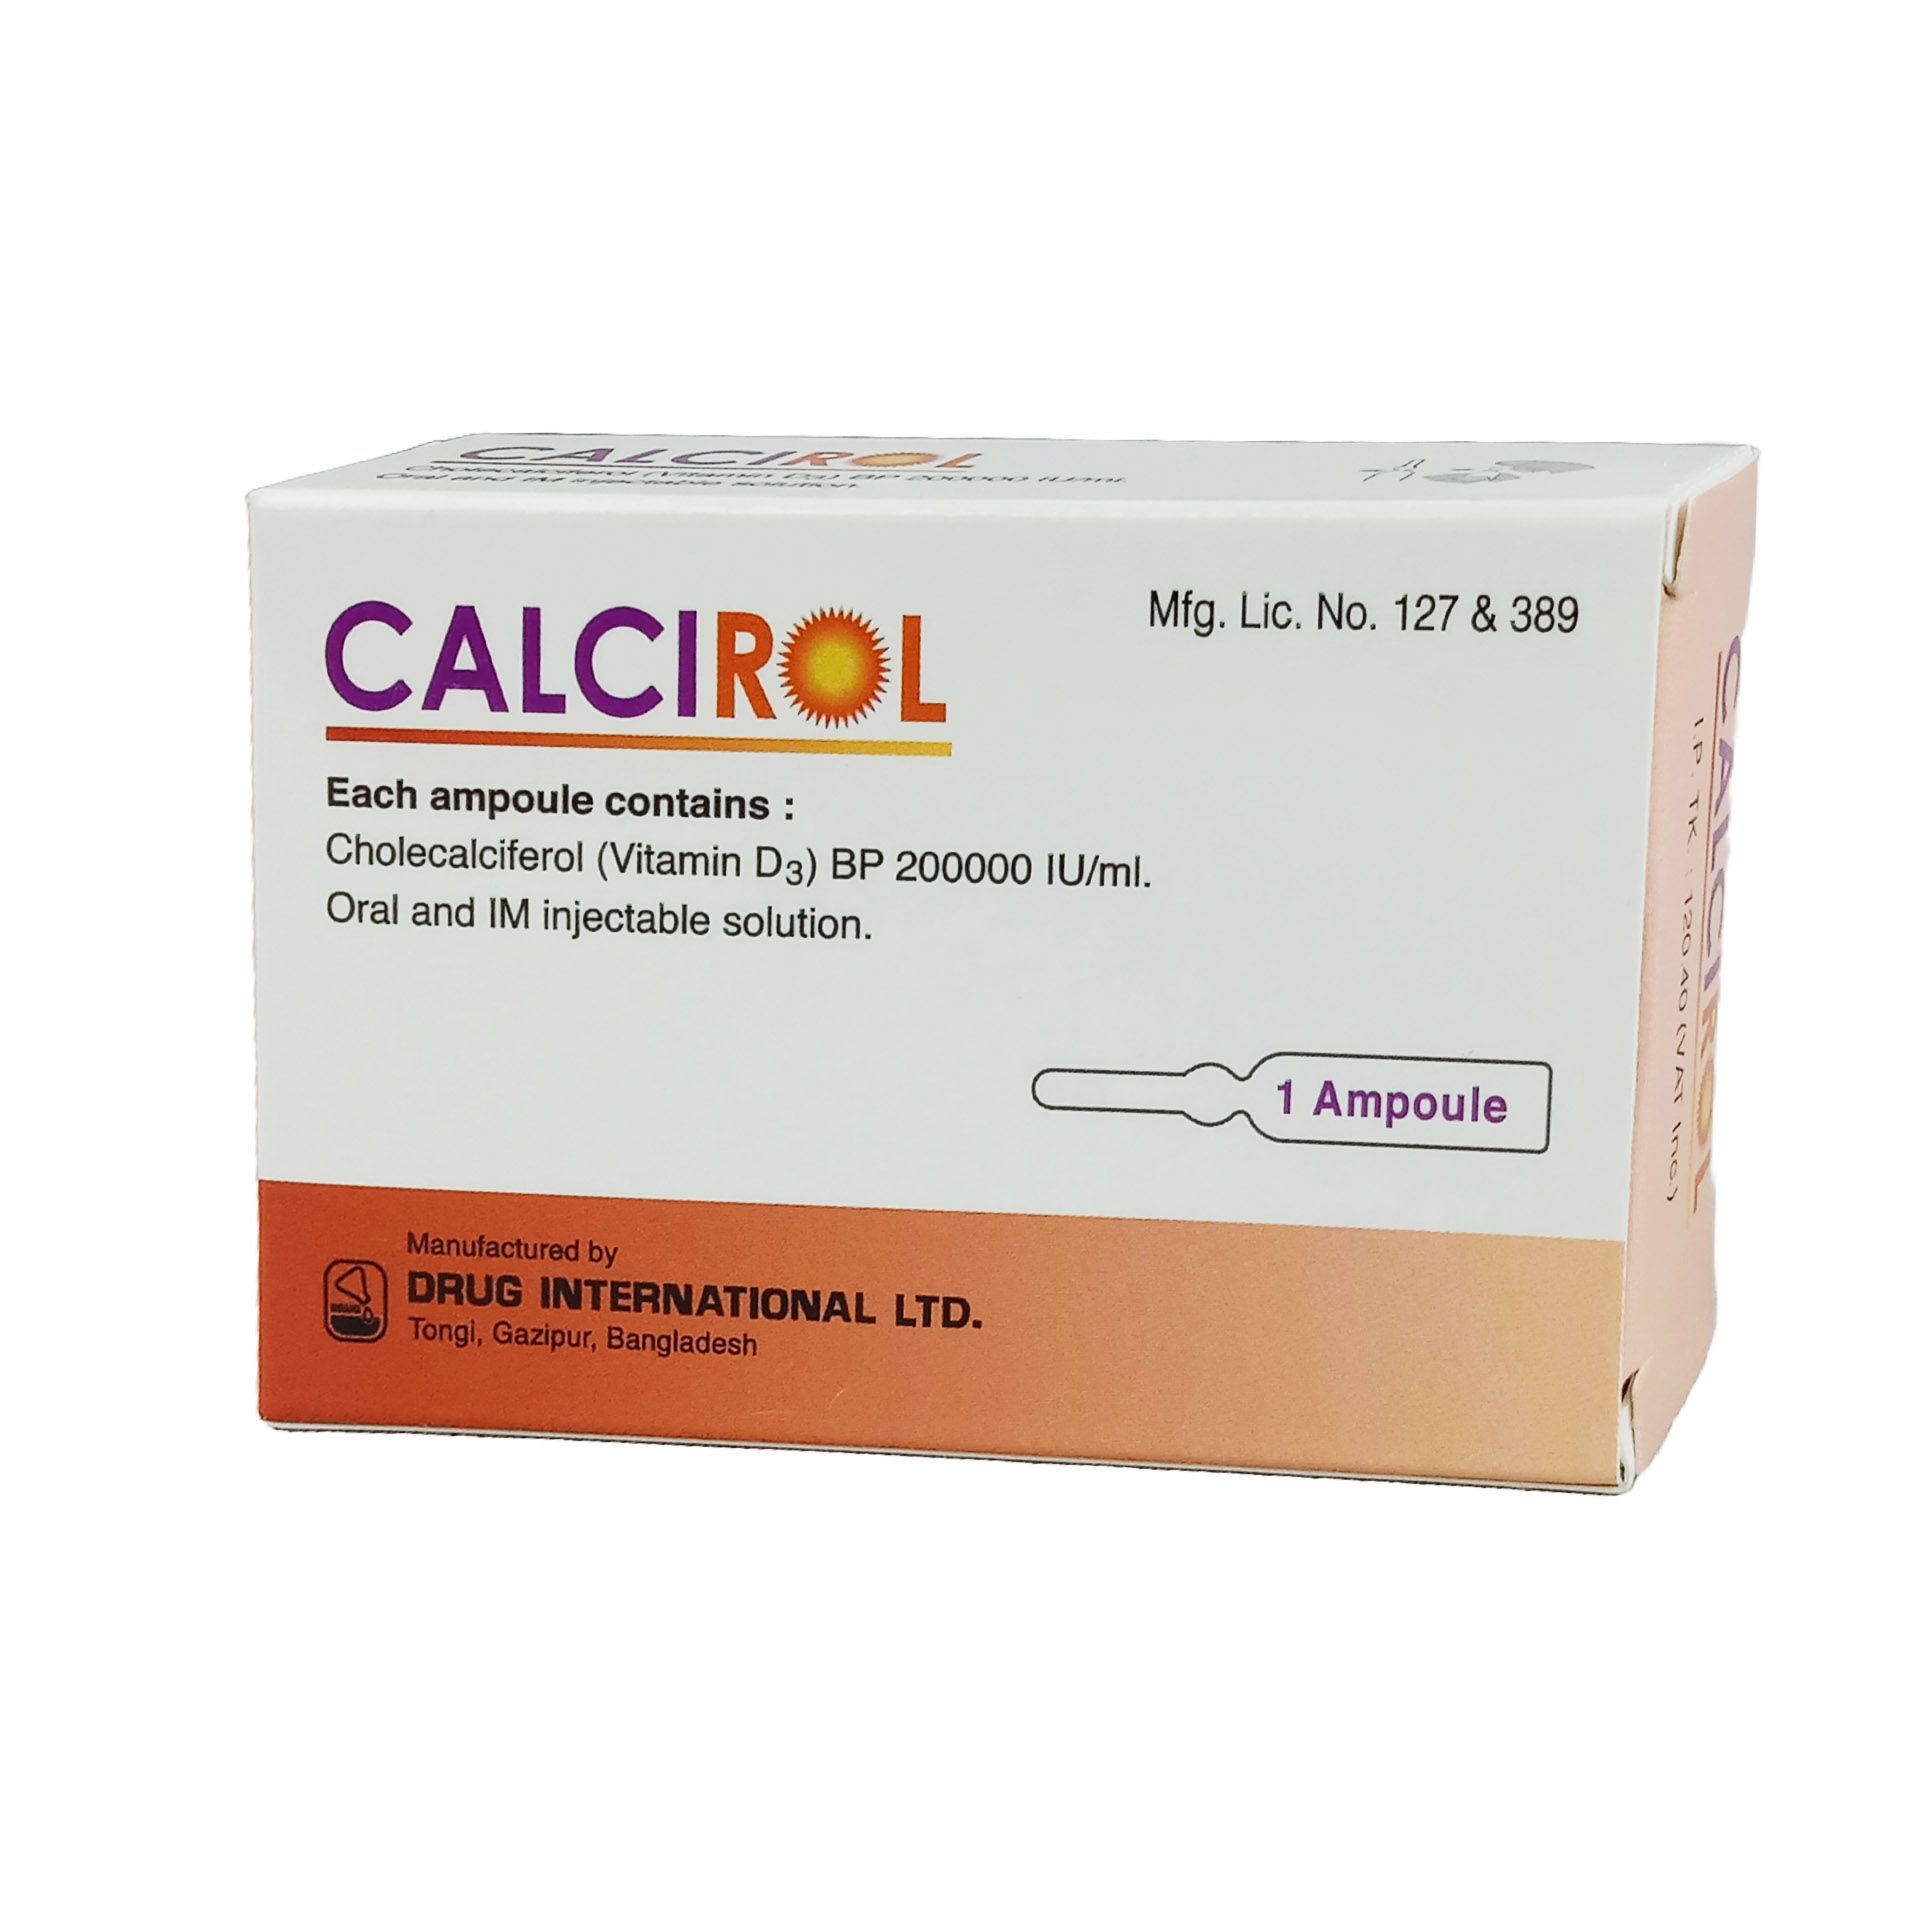 Calcirol 5mg/ml Injection